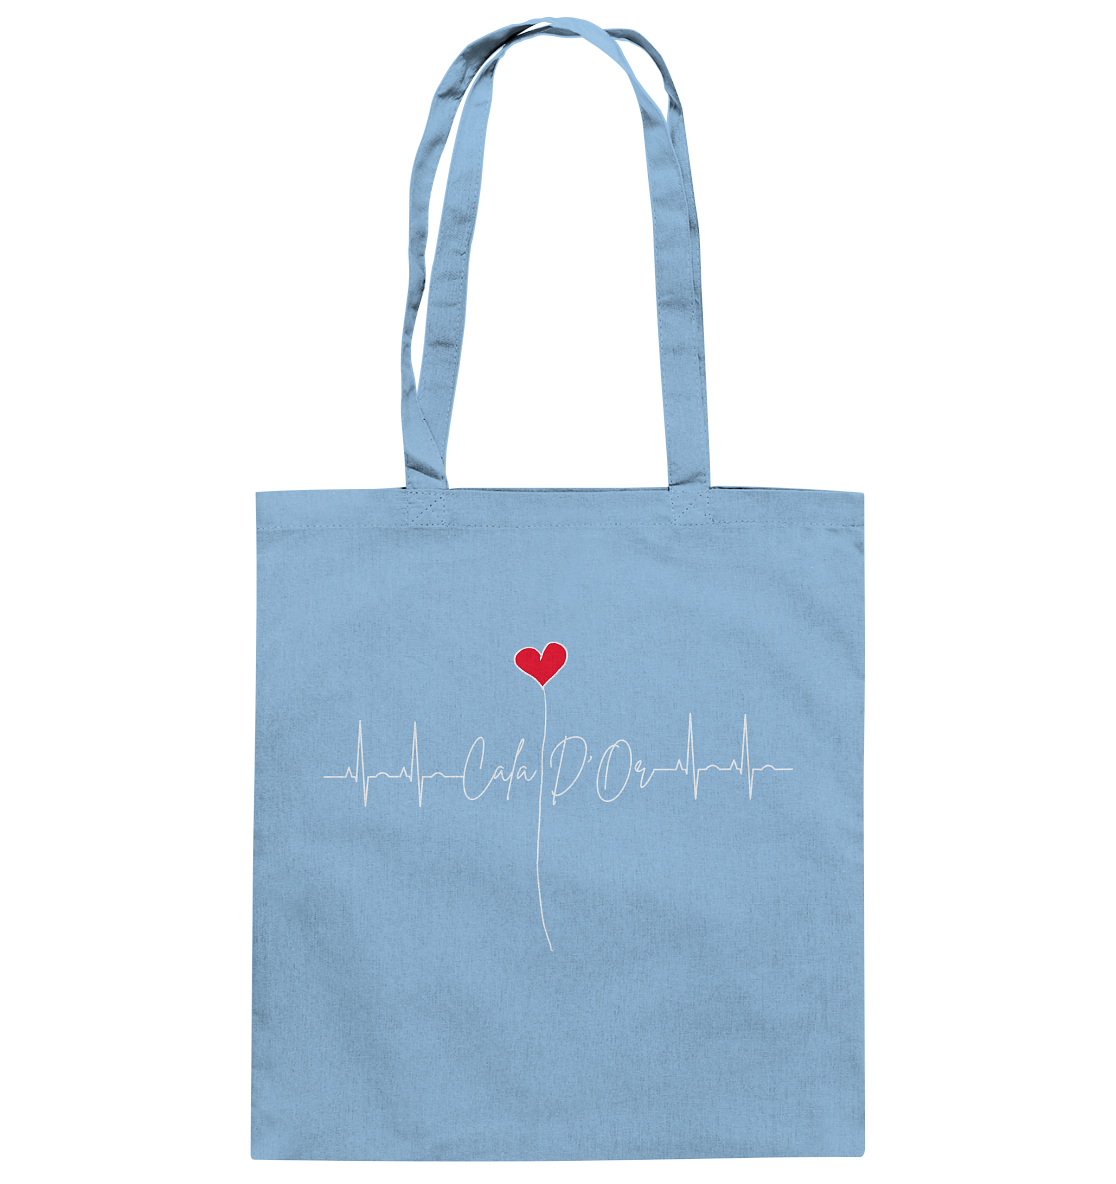 Hellblaue Baumwolltragetaschen mit Aufschrift Cala D'Or und einem Herz